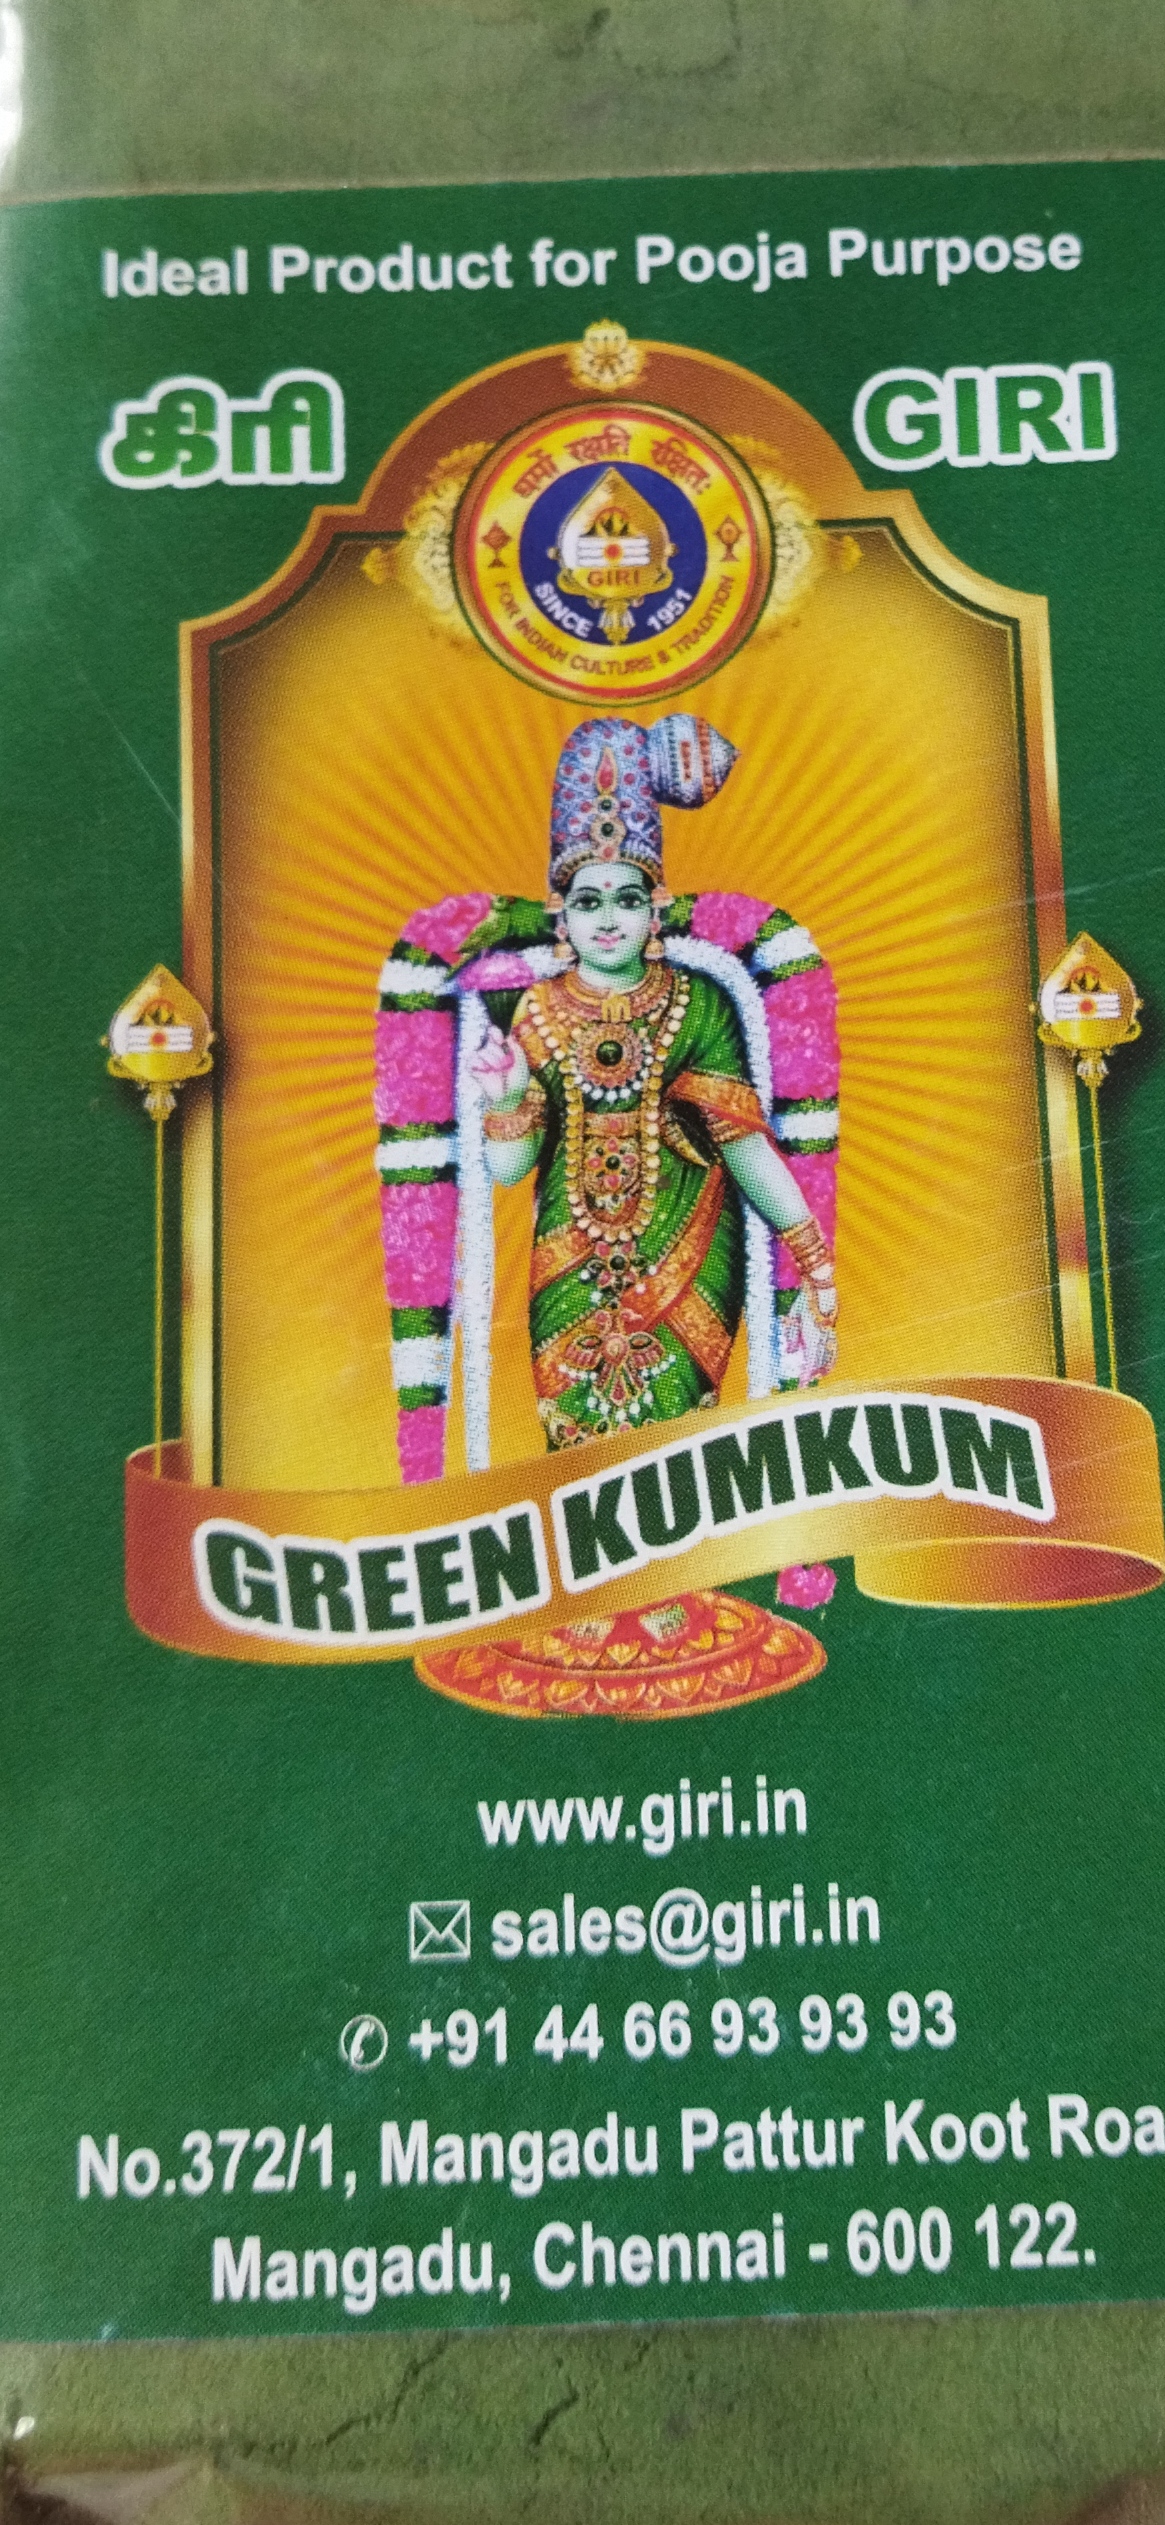 Giri green kumkum 50 gms